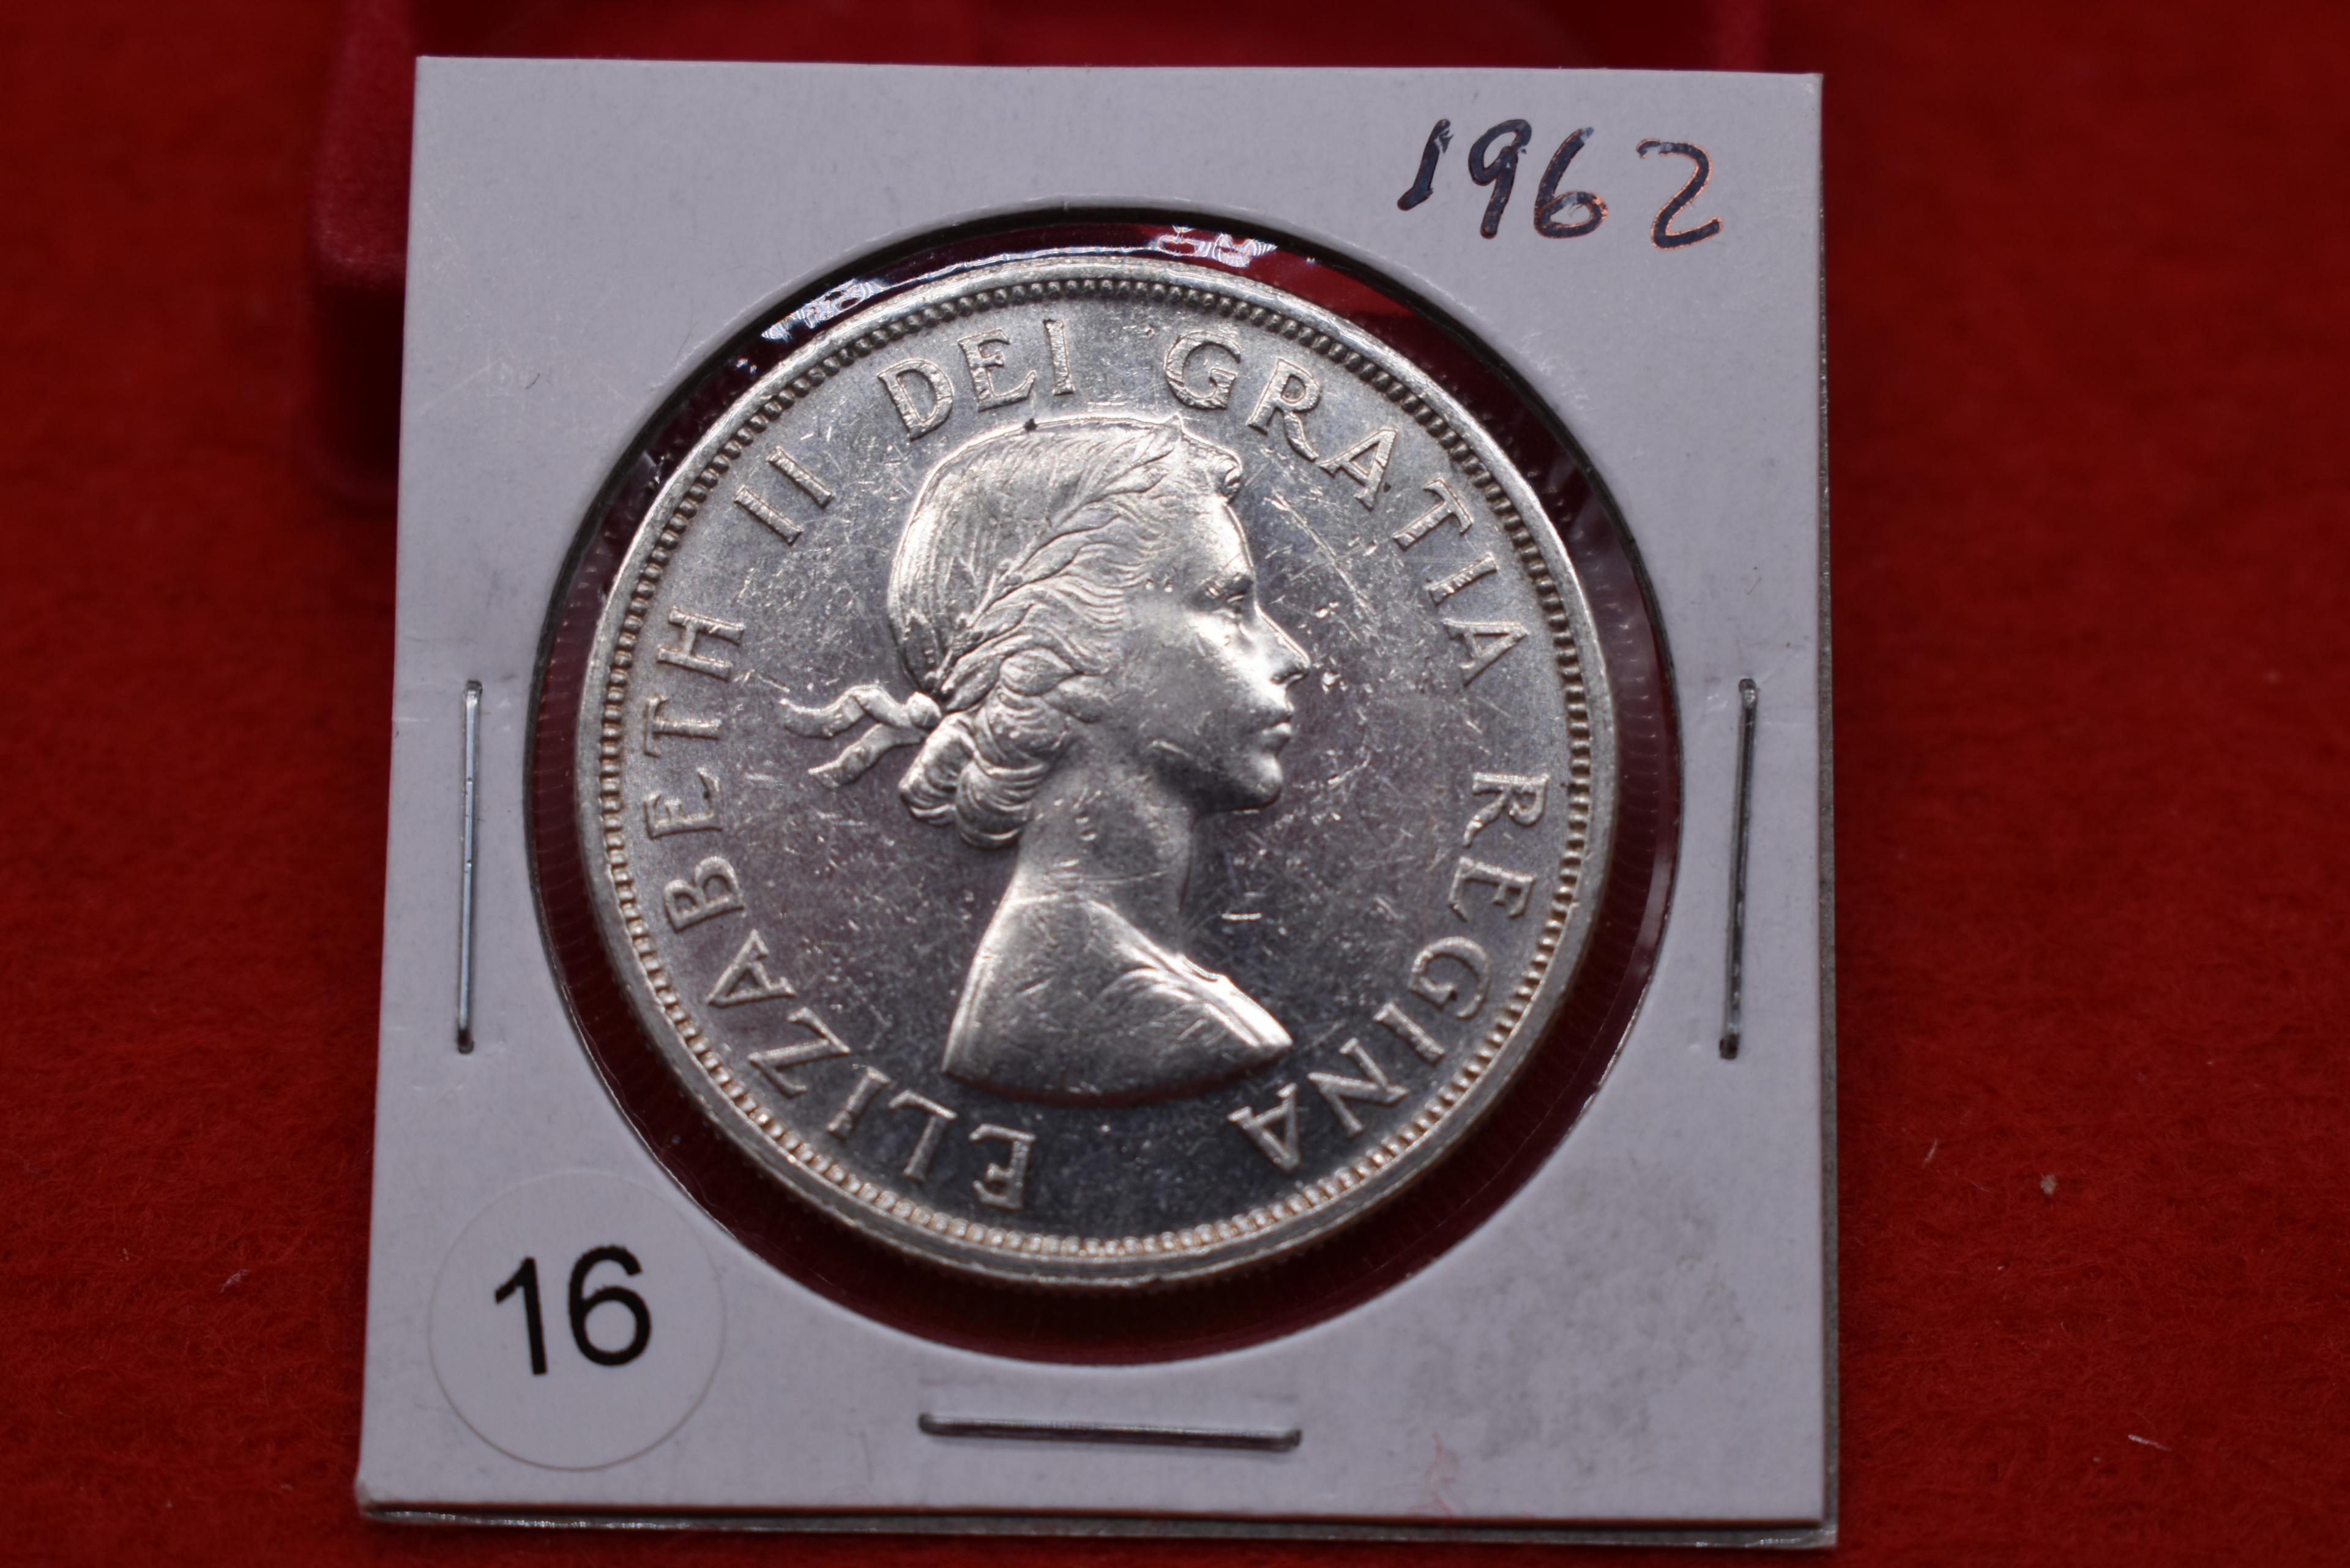 1962 Canadian Silver Dollar - Bu